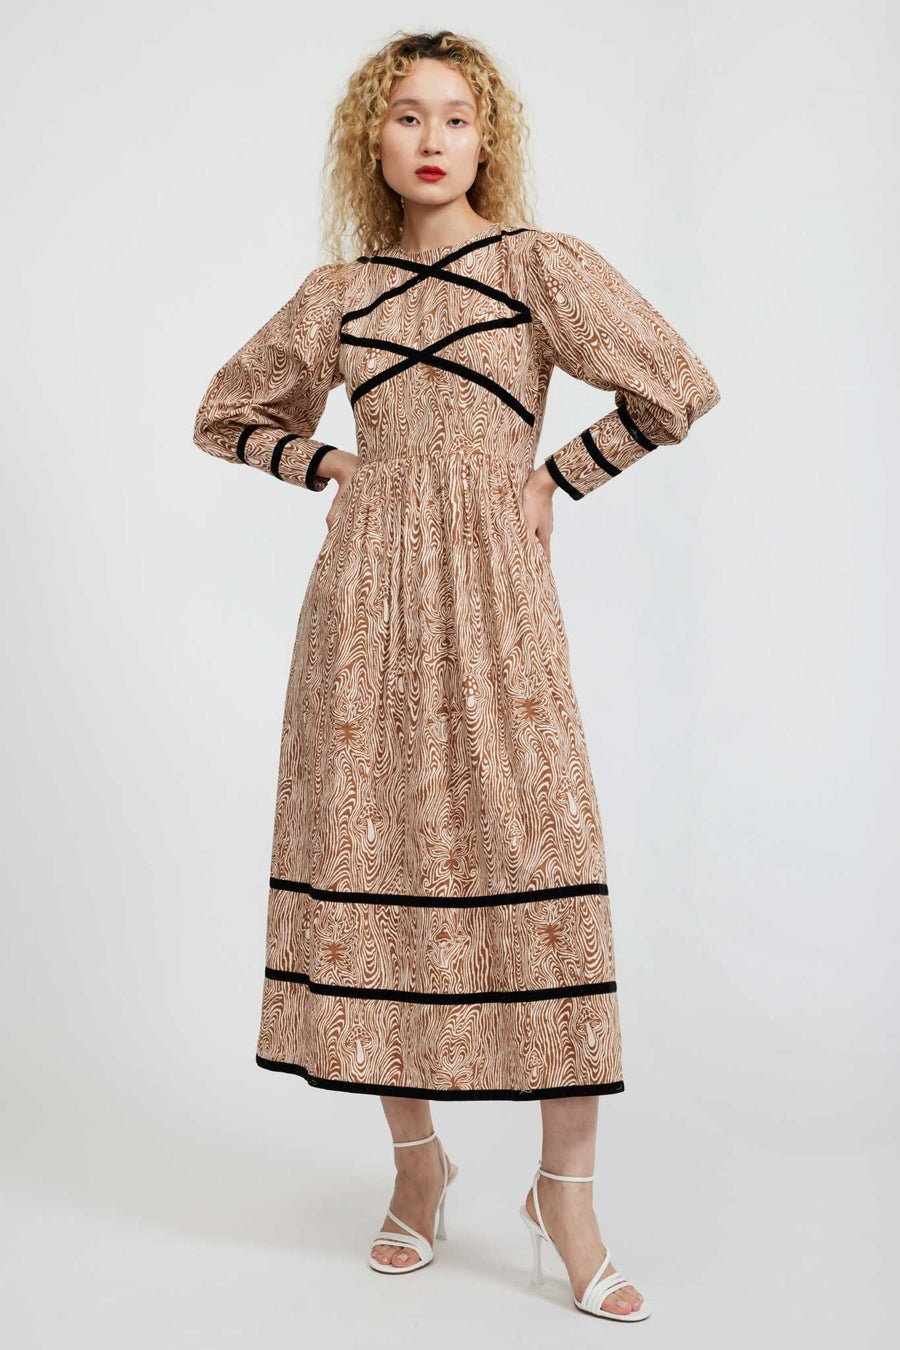 BATSHEVA - Clemmie Dress in Woodgrain Fantasy